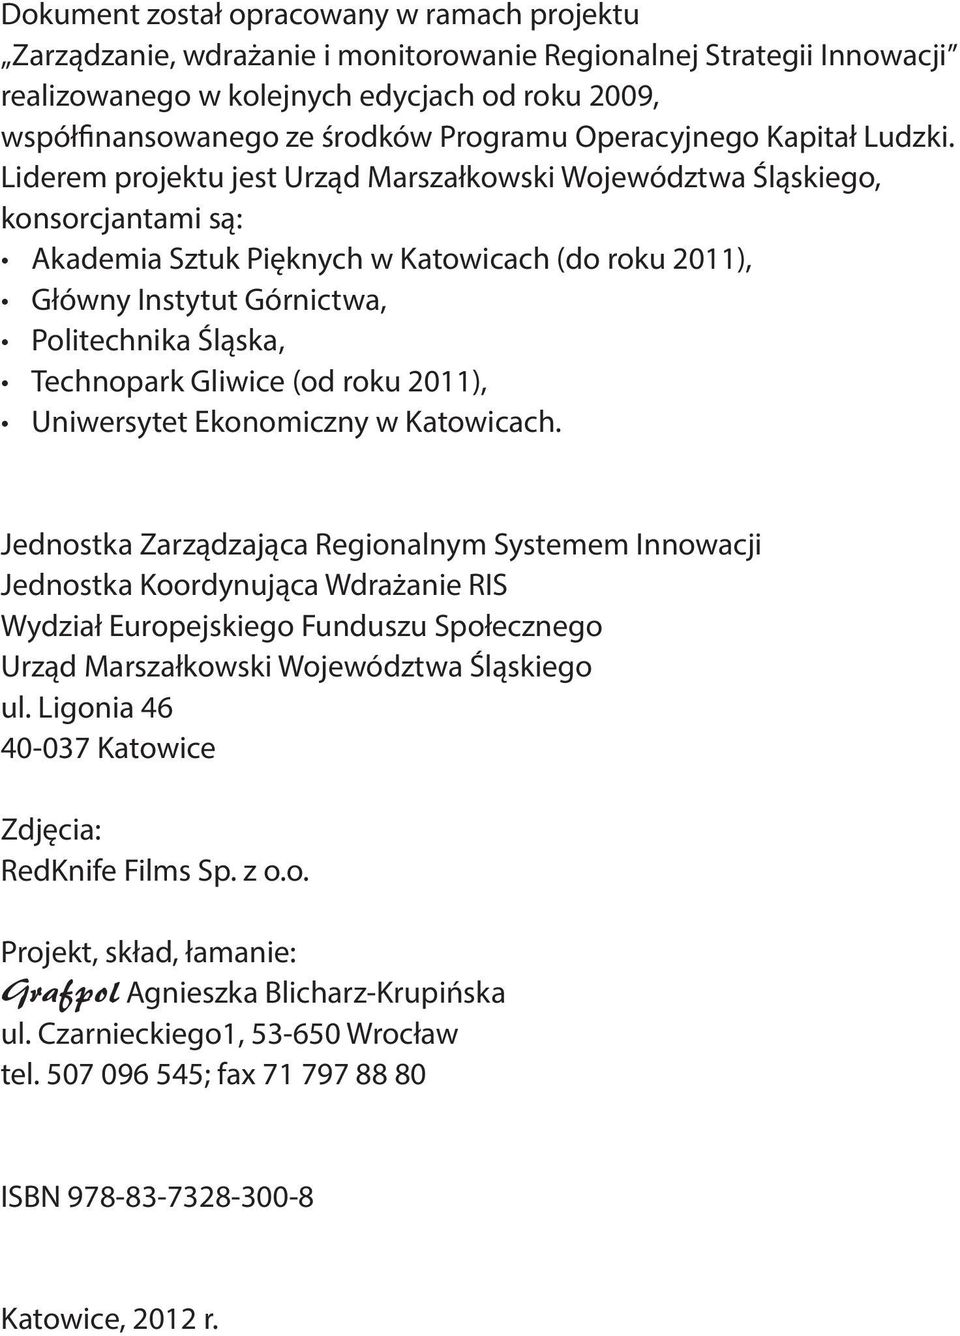 Liderem projektu jest Urząd Marszałkowski Województwa Śląskiego, konsorcjantami są: Akademia Sztuk Pięknych w Katowicach (do roku 2011), Główny Instytut Górnictwa, Politechnika Śląska, Technopark